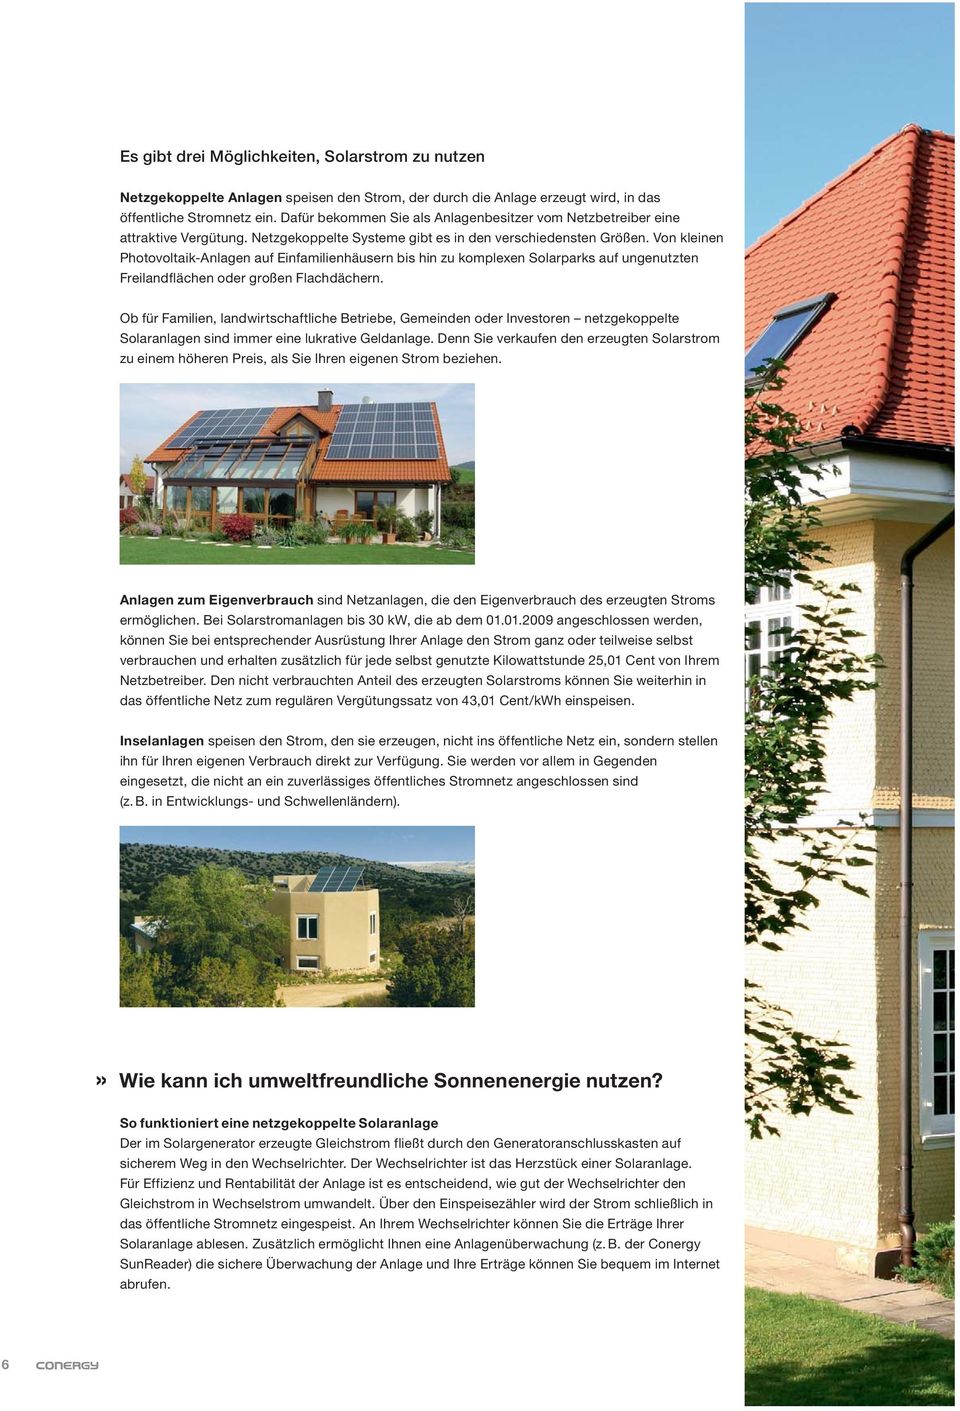 Von kleinen Photovoltaik-Anlagen auf Einfamilienhäusern bis hin zu komplexen Solarparks auf unge nutzten Freilandflächen oder großen Flachdächern.